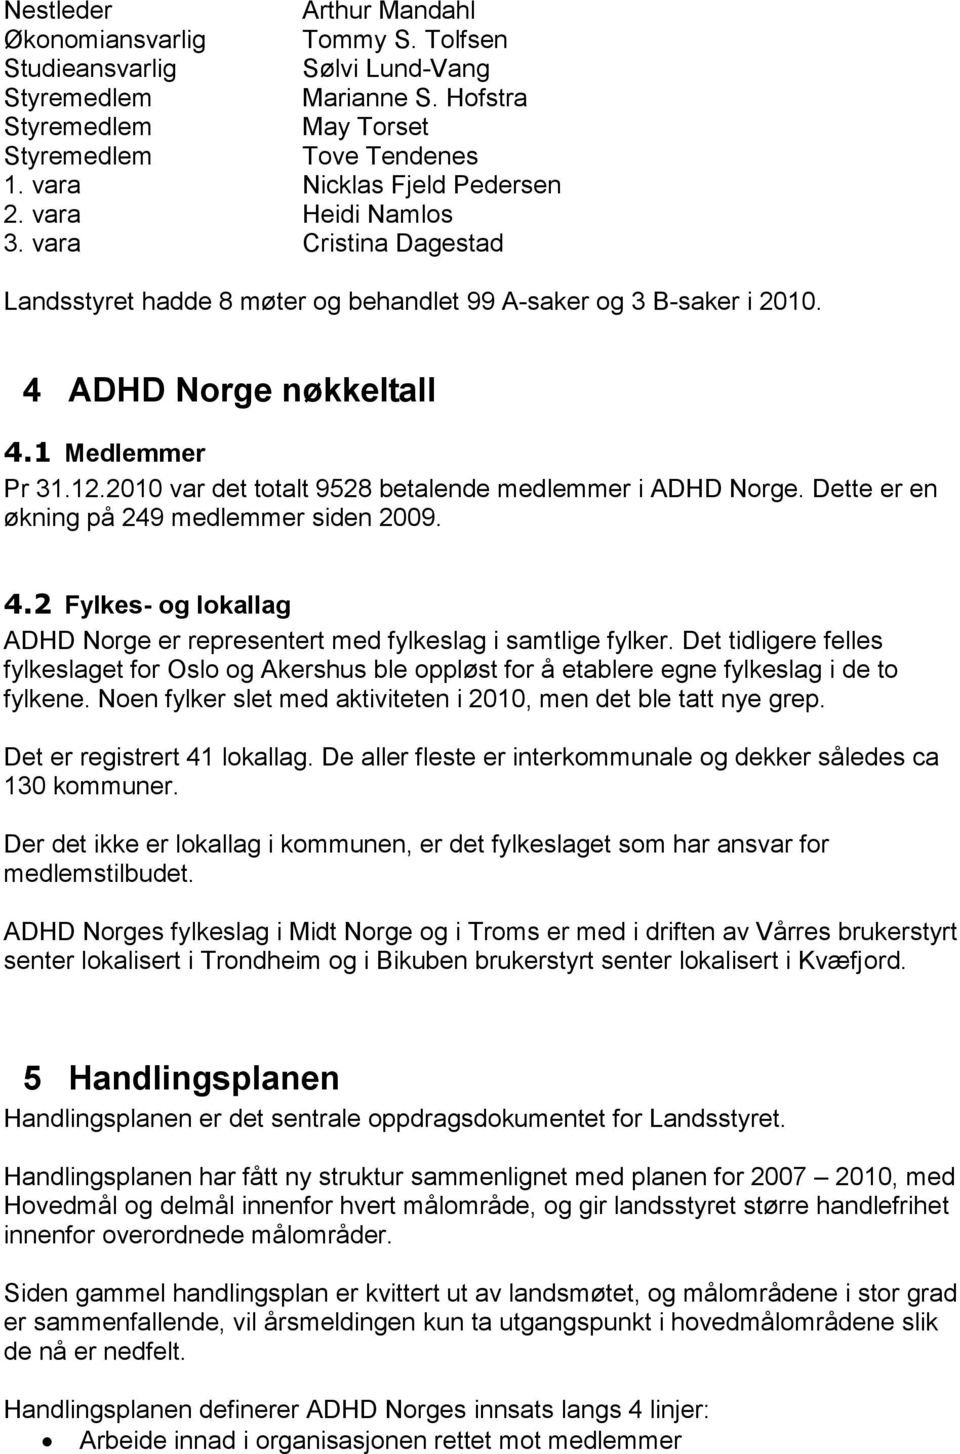 2010 var det totalt 9528 betalende medlemmer i ADHD Norge. Dette er en økning på 249 medlemmer siden 2009. 4.2 Fylkes- og lokallag ADHD Norge er representert med fylkeslag i samtlige fylker.